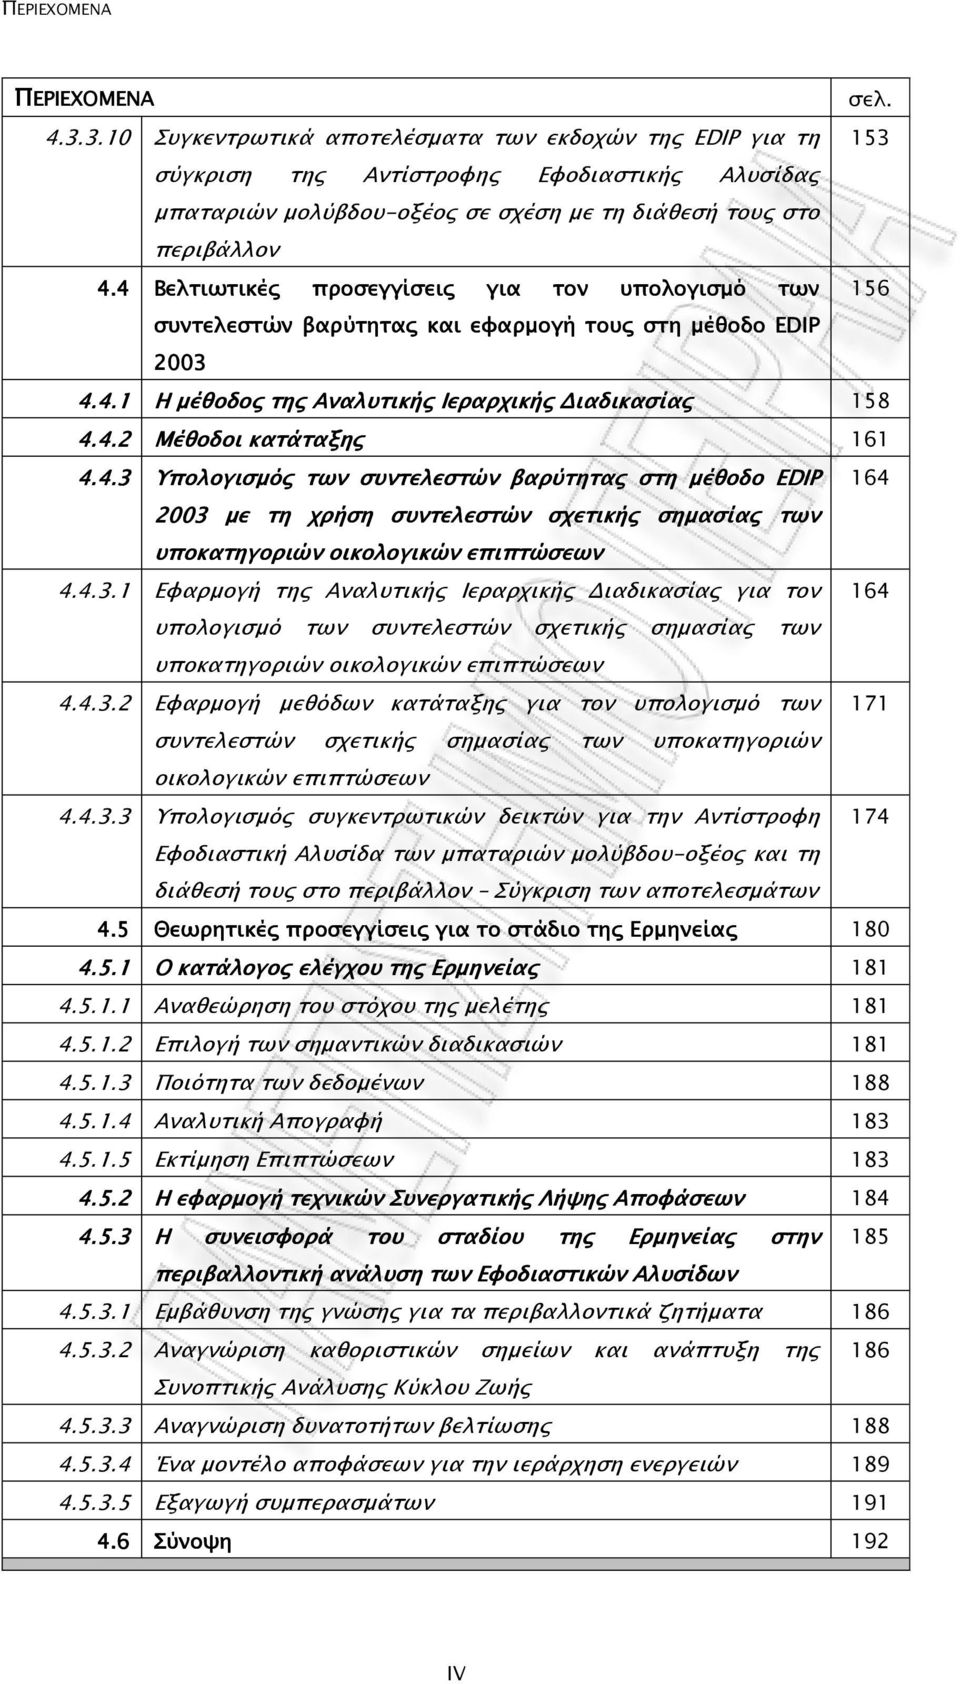 4 Βελτιωτικές προσεγγίσεις για τον υπολογισµό των 156 συντελεστών βαρύτητας και εφαρµογή τους στη µέθοδο EDIP 2003 4.4.1 Η µέθοδος της Αναλυτικής Ιεραρχικής ιαδικασίας ας 158 4.4.2 Μέθοδοι κατάταξης 161 4.